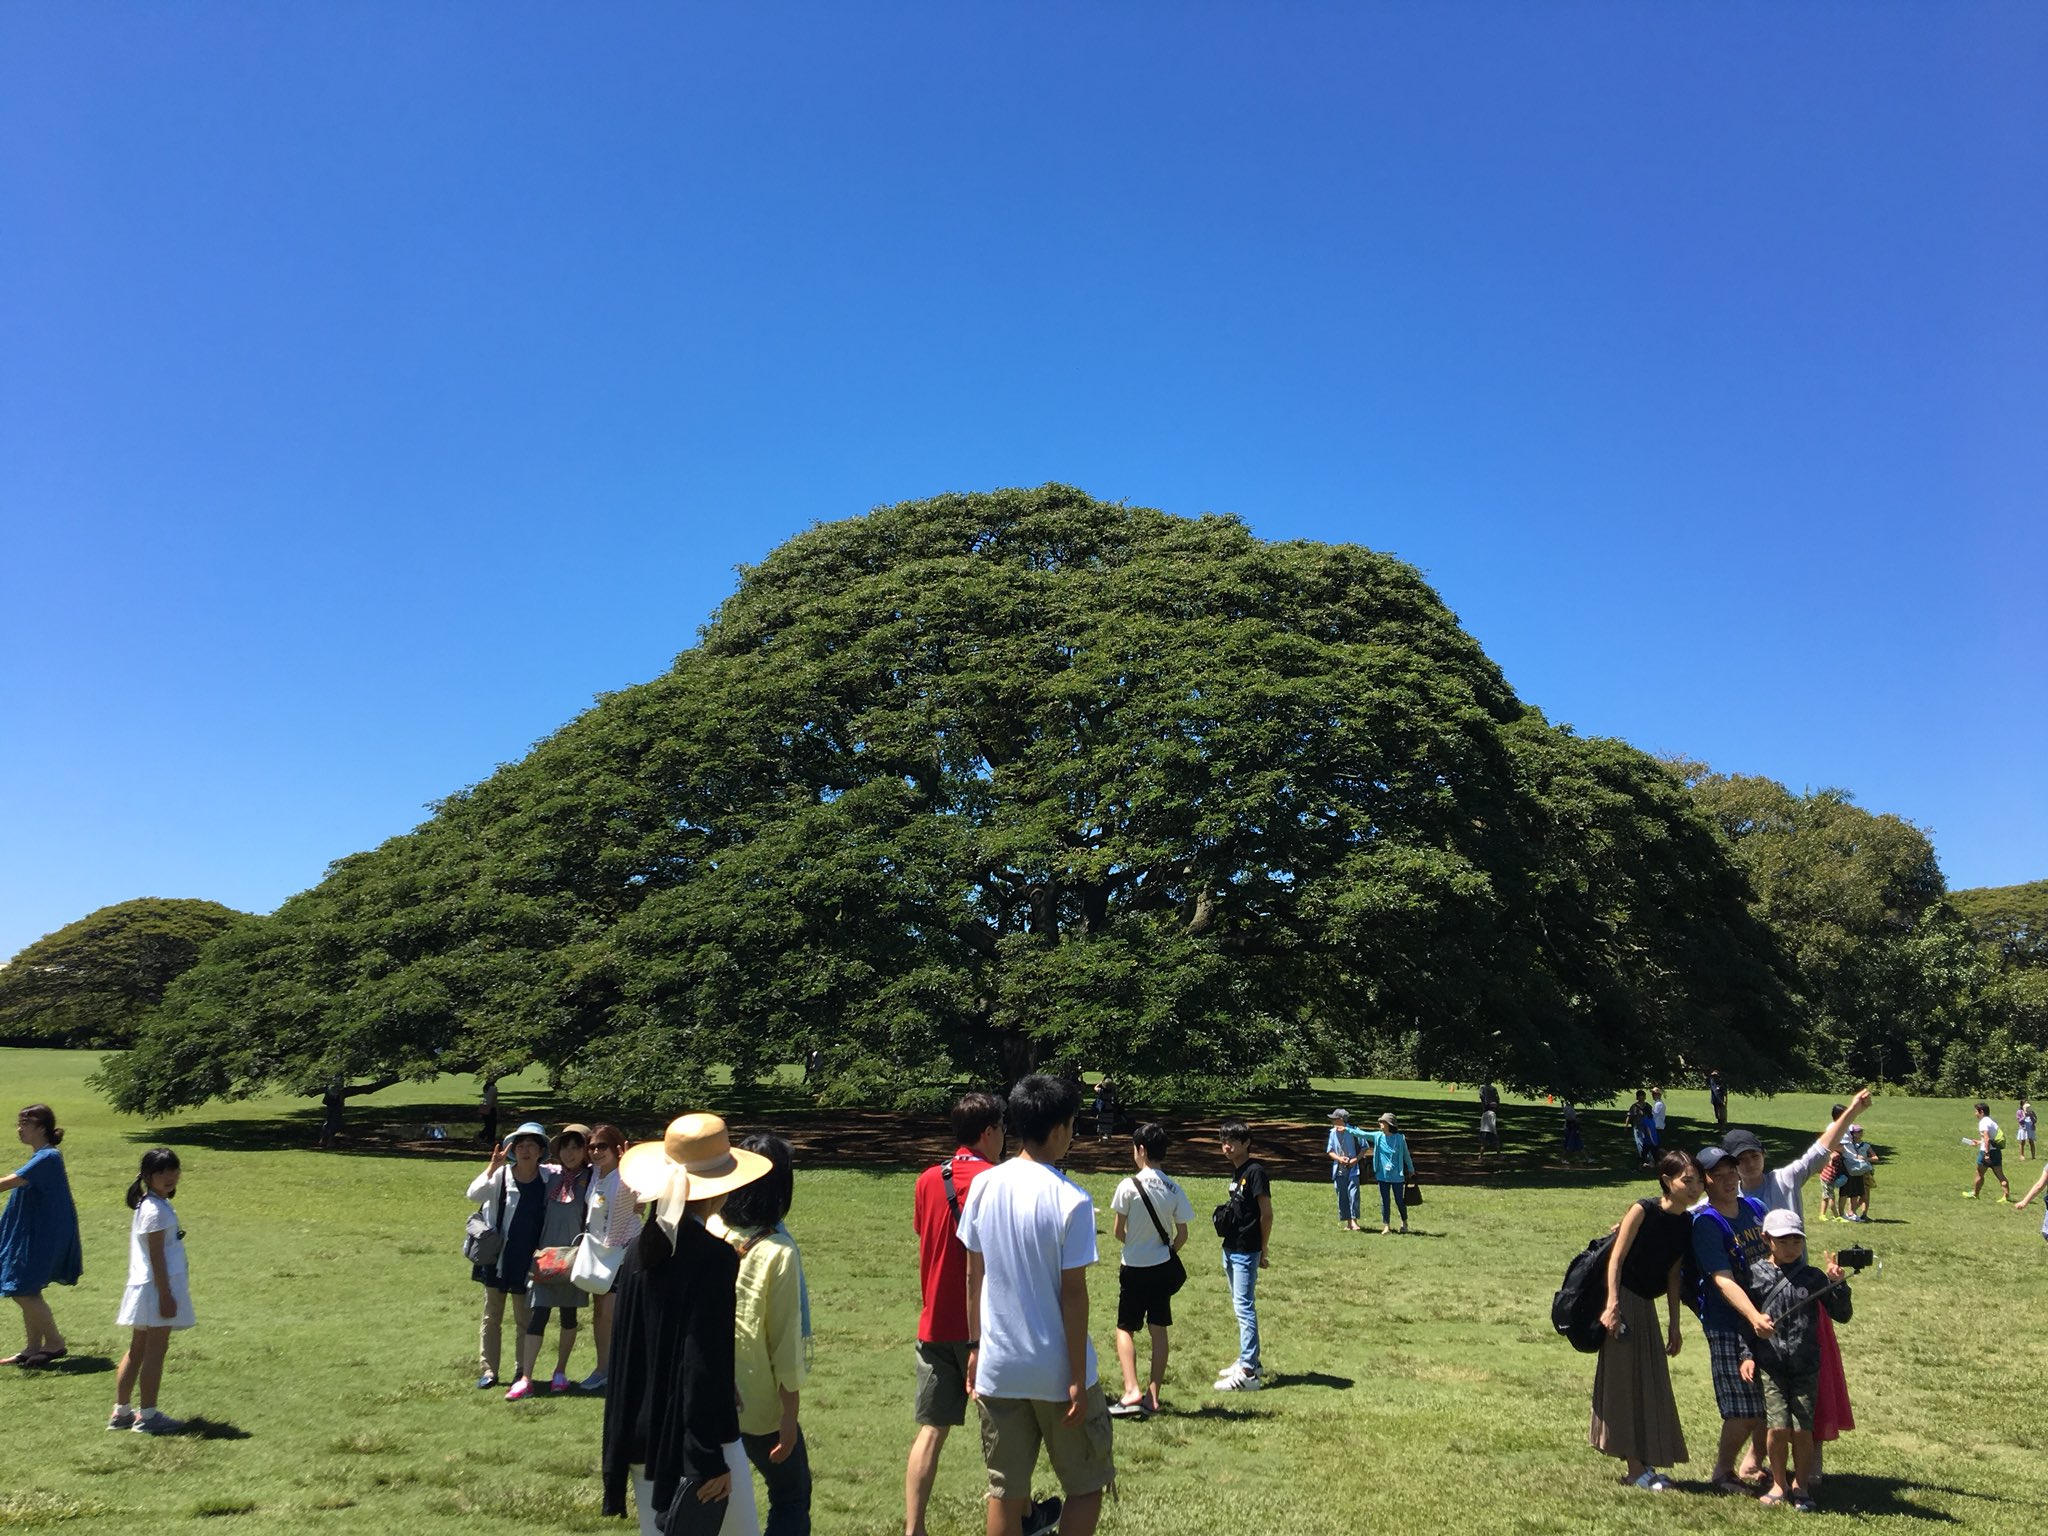 Kashiwaman 日立の樹 アラモアナガーデン 日立製作所のcm この木なんの木 でお馴染みの 日本一有名な樹 柏サポとしてぜひ一度来たい場所だった 夢が叶った その雄大さに感動した T Co Y8ovmikxev Twitter